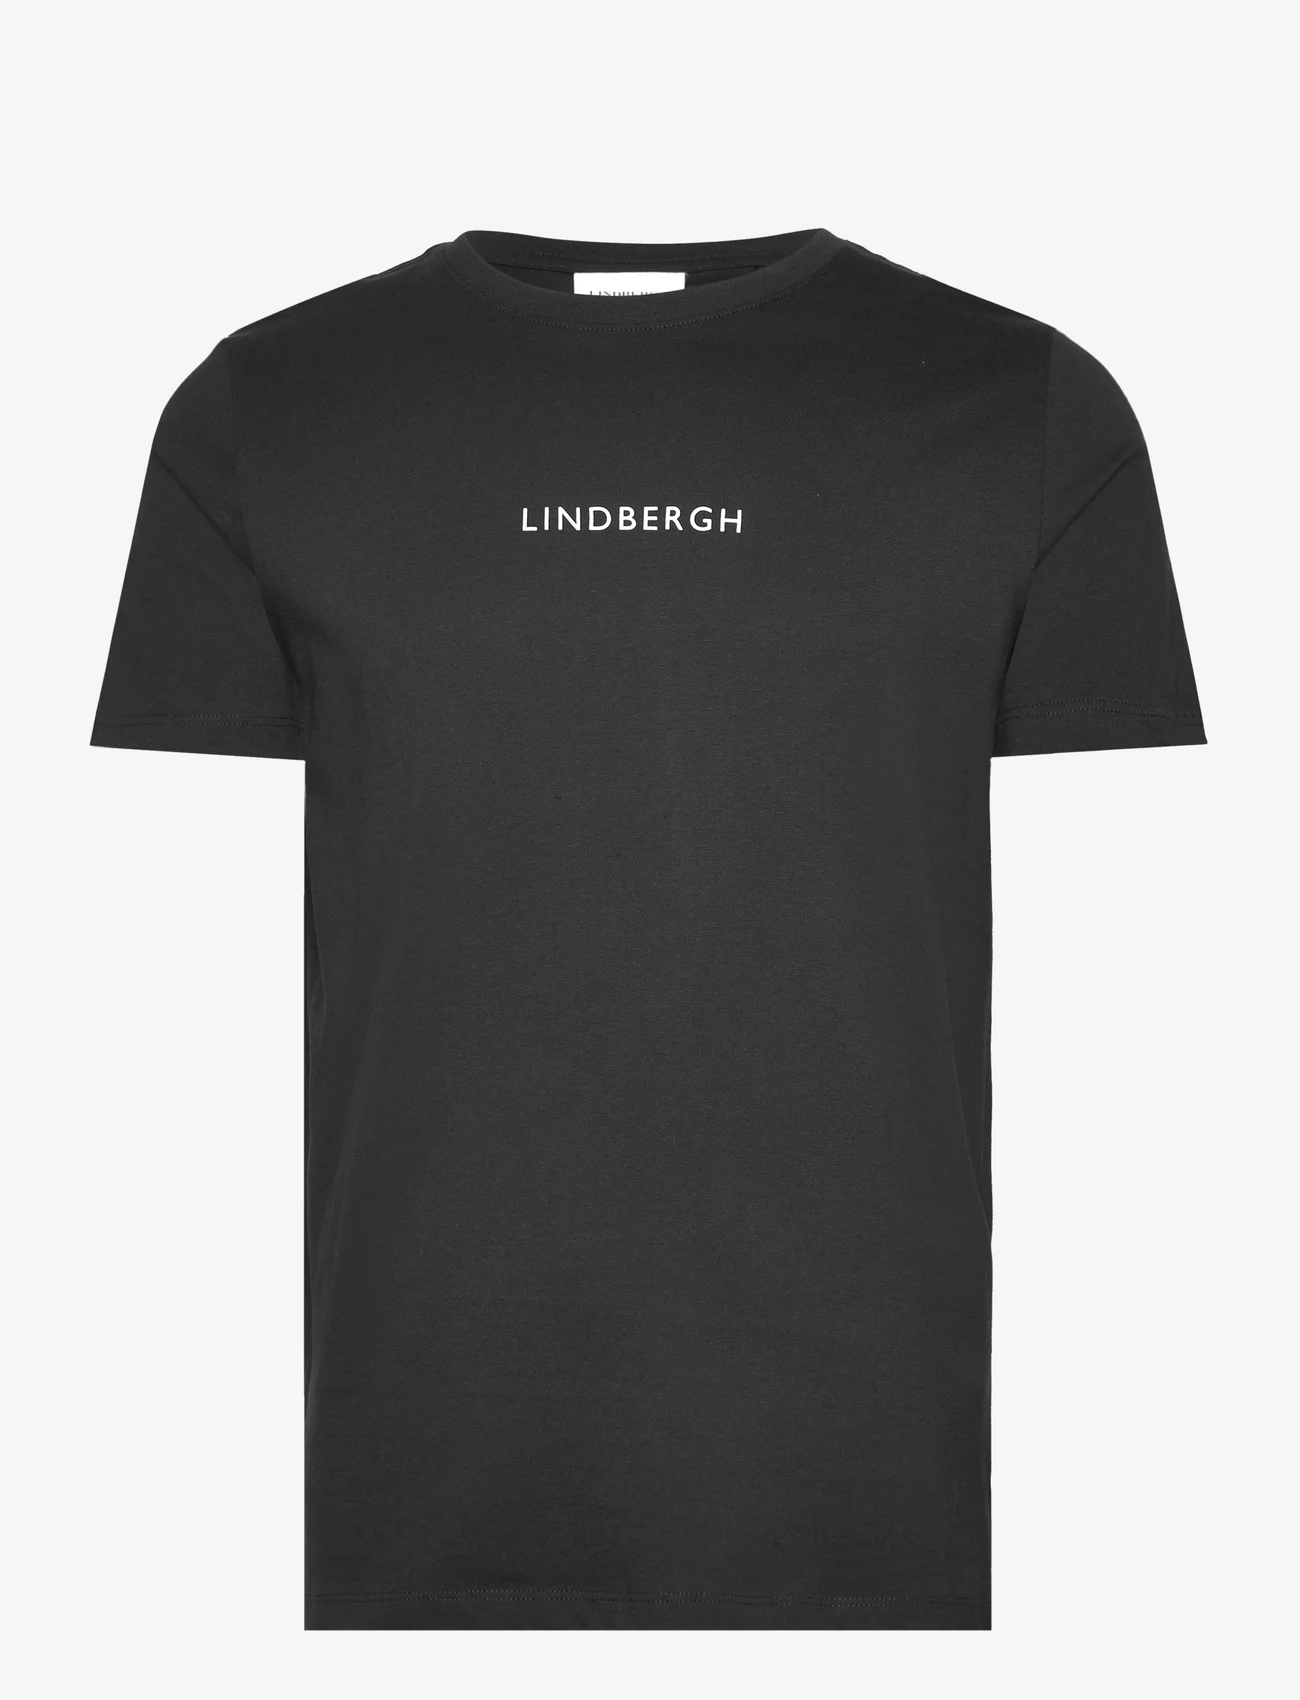 Lindbergh - Lindbegrh print tee S/S - die niedrigsten preise - navy - 0